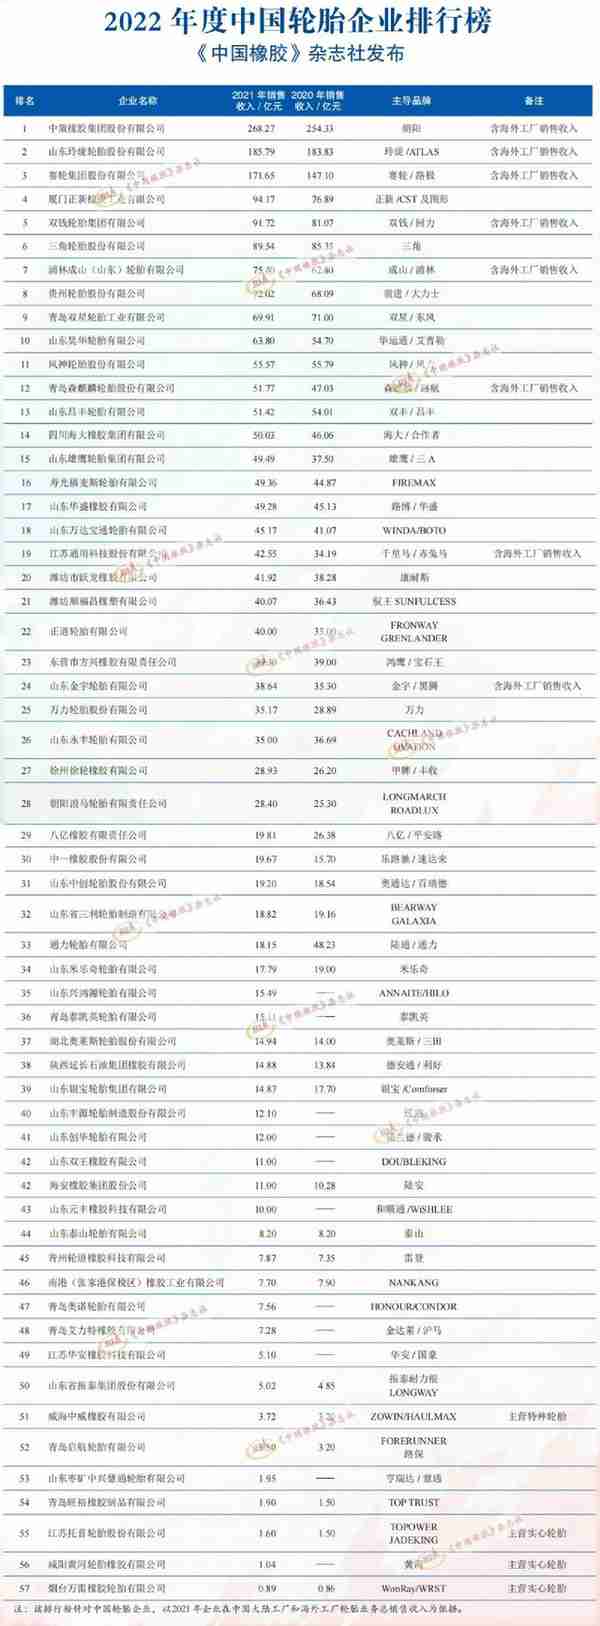 上海轮胎橡胶集团股份有限公司(2020新版上海市轮胎企业名录)